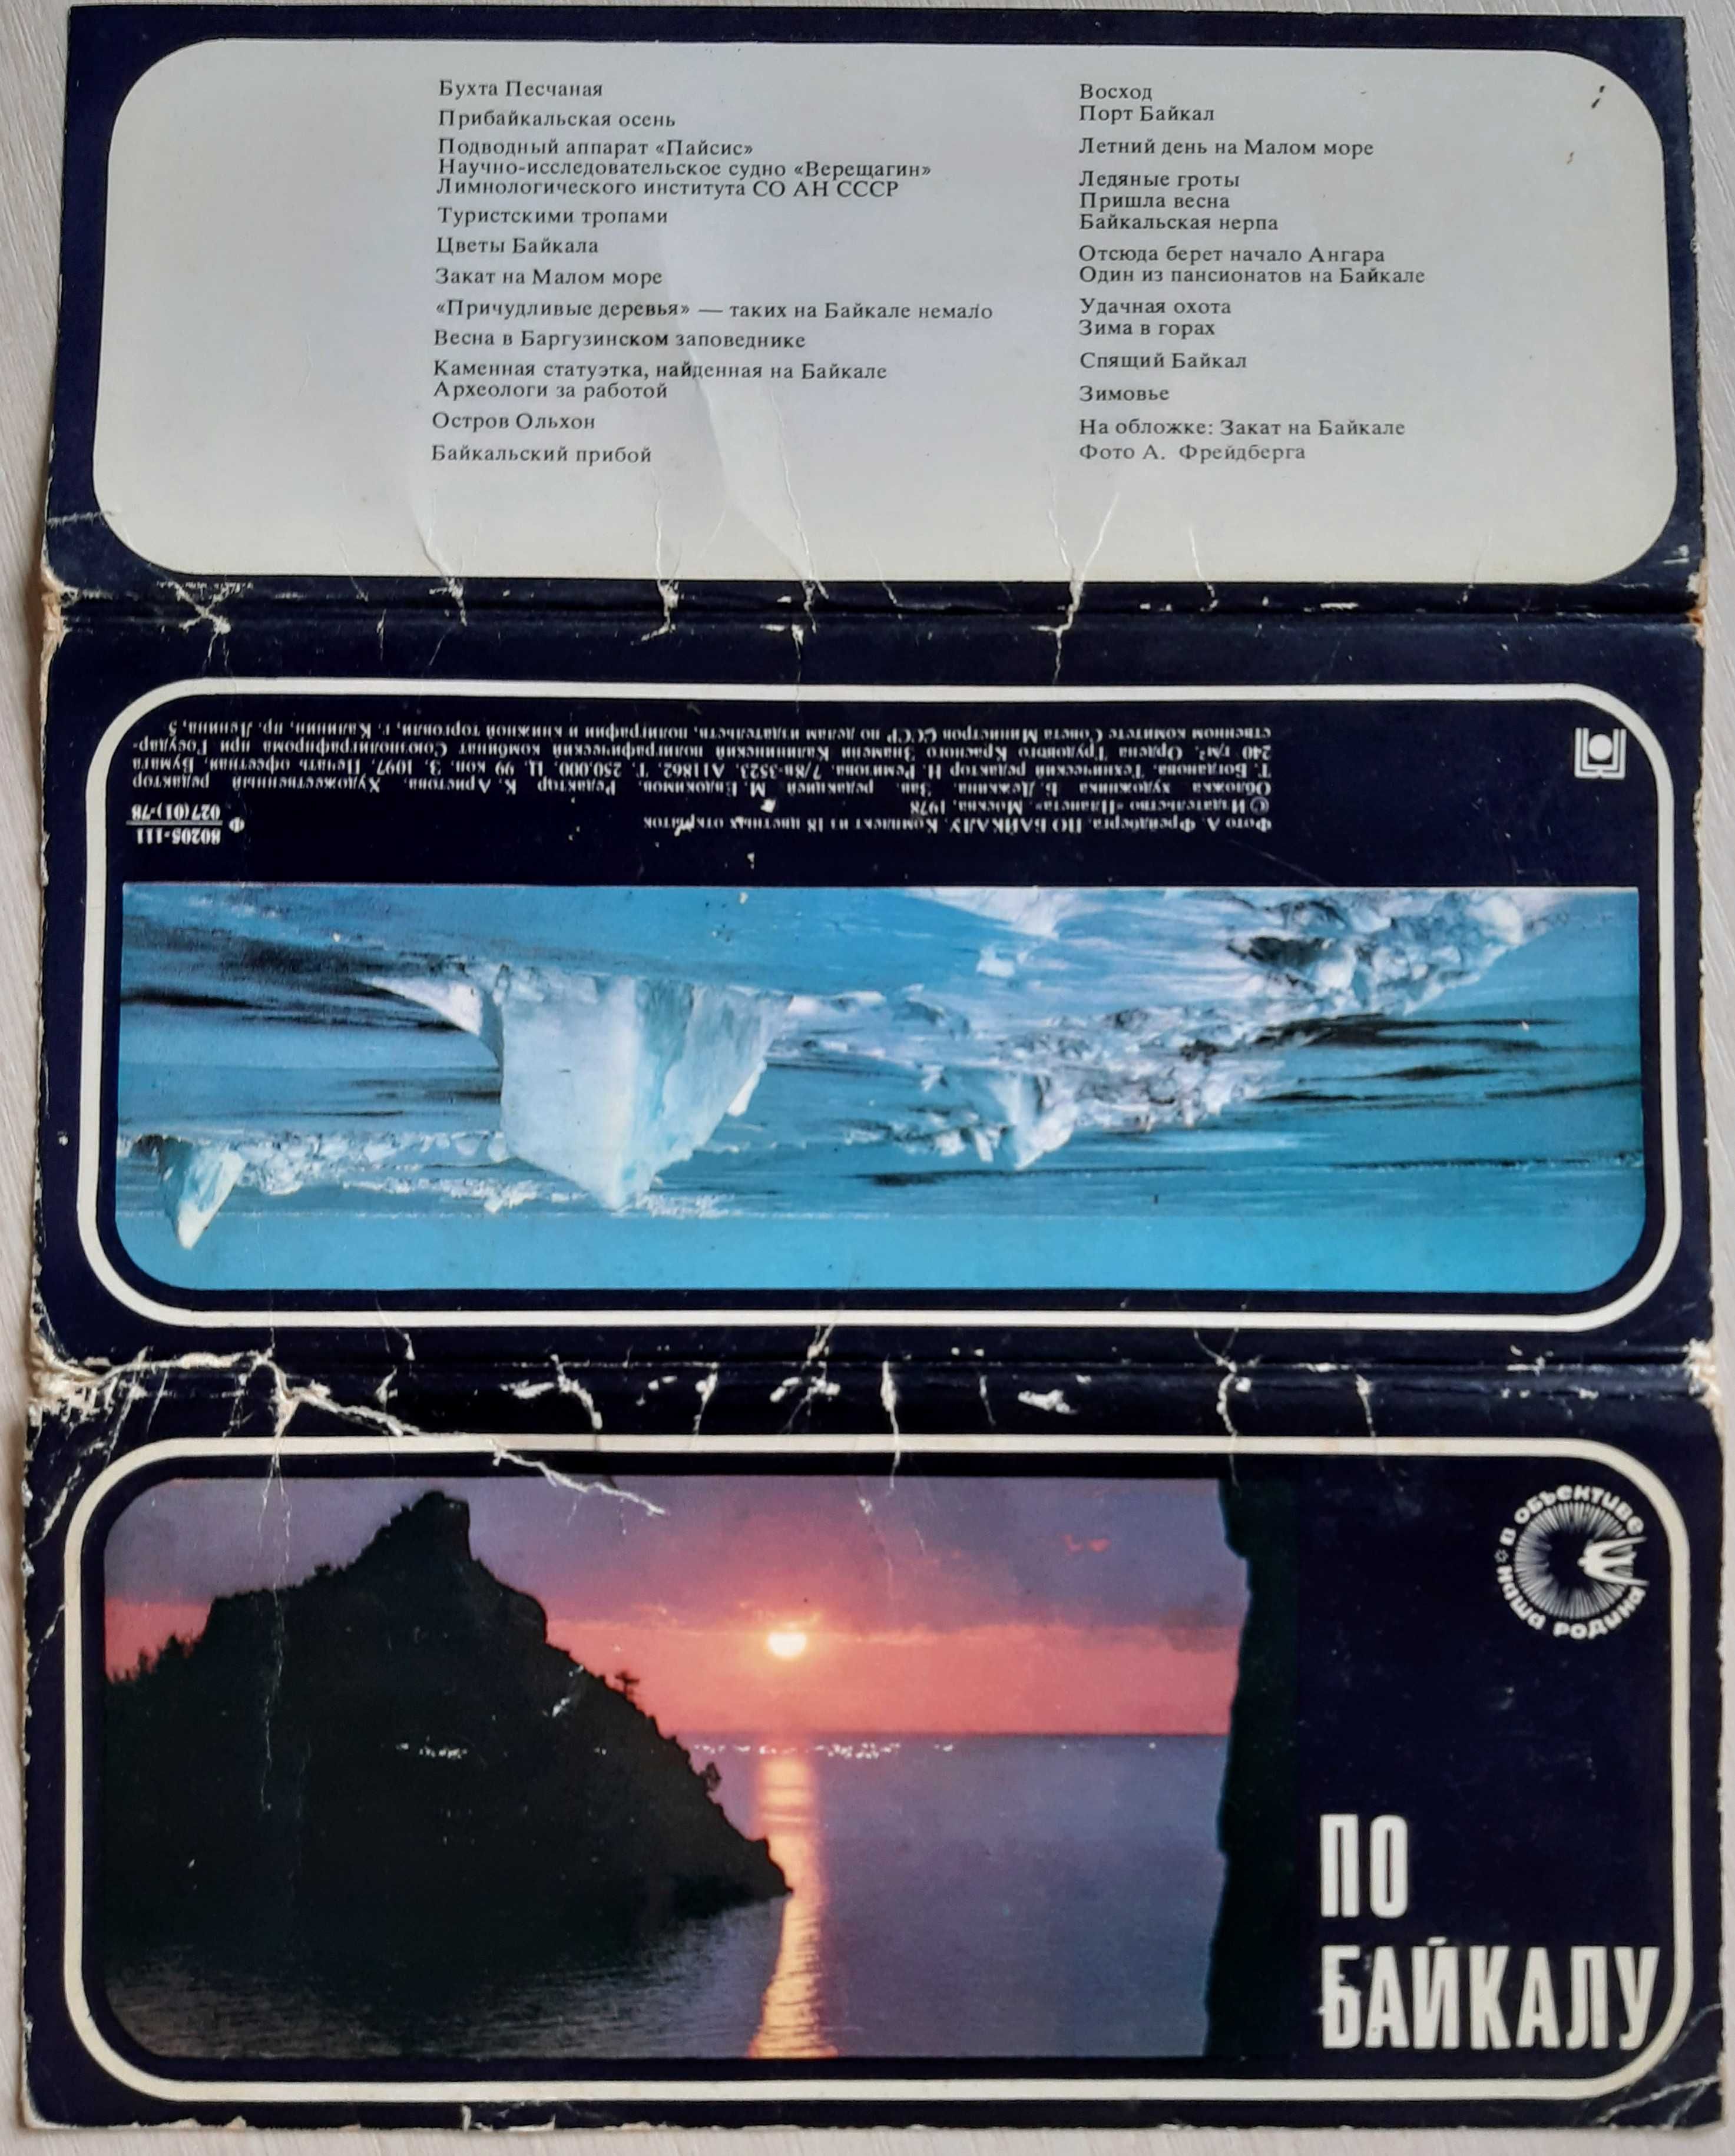 Открытки По Байкалу набор открыток 18 шт 10 х 21 см 1978 г.